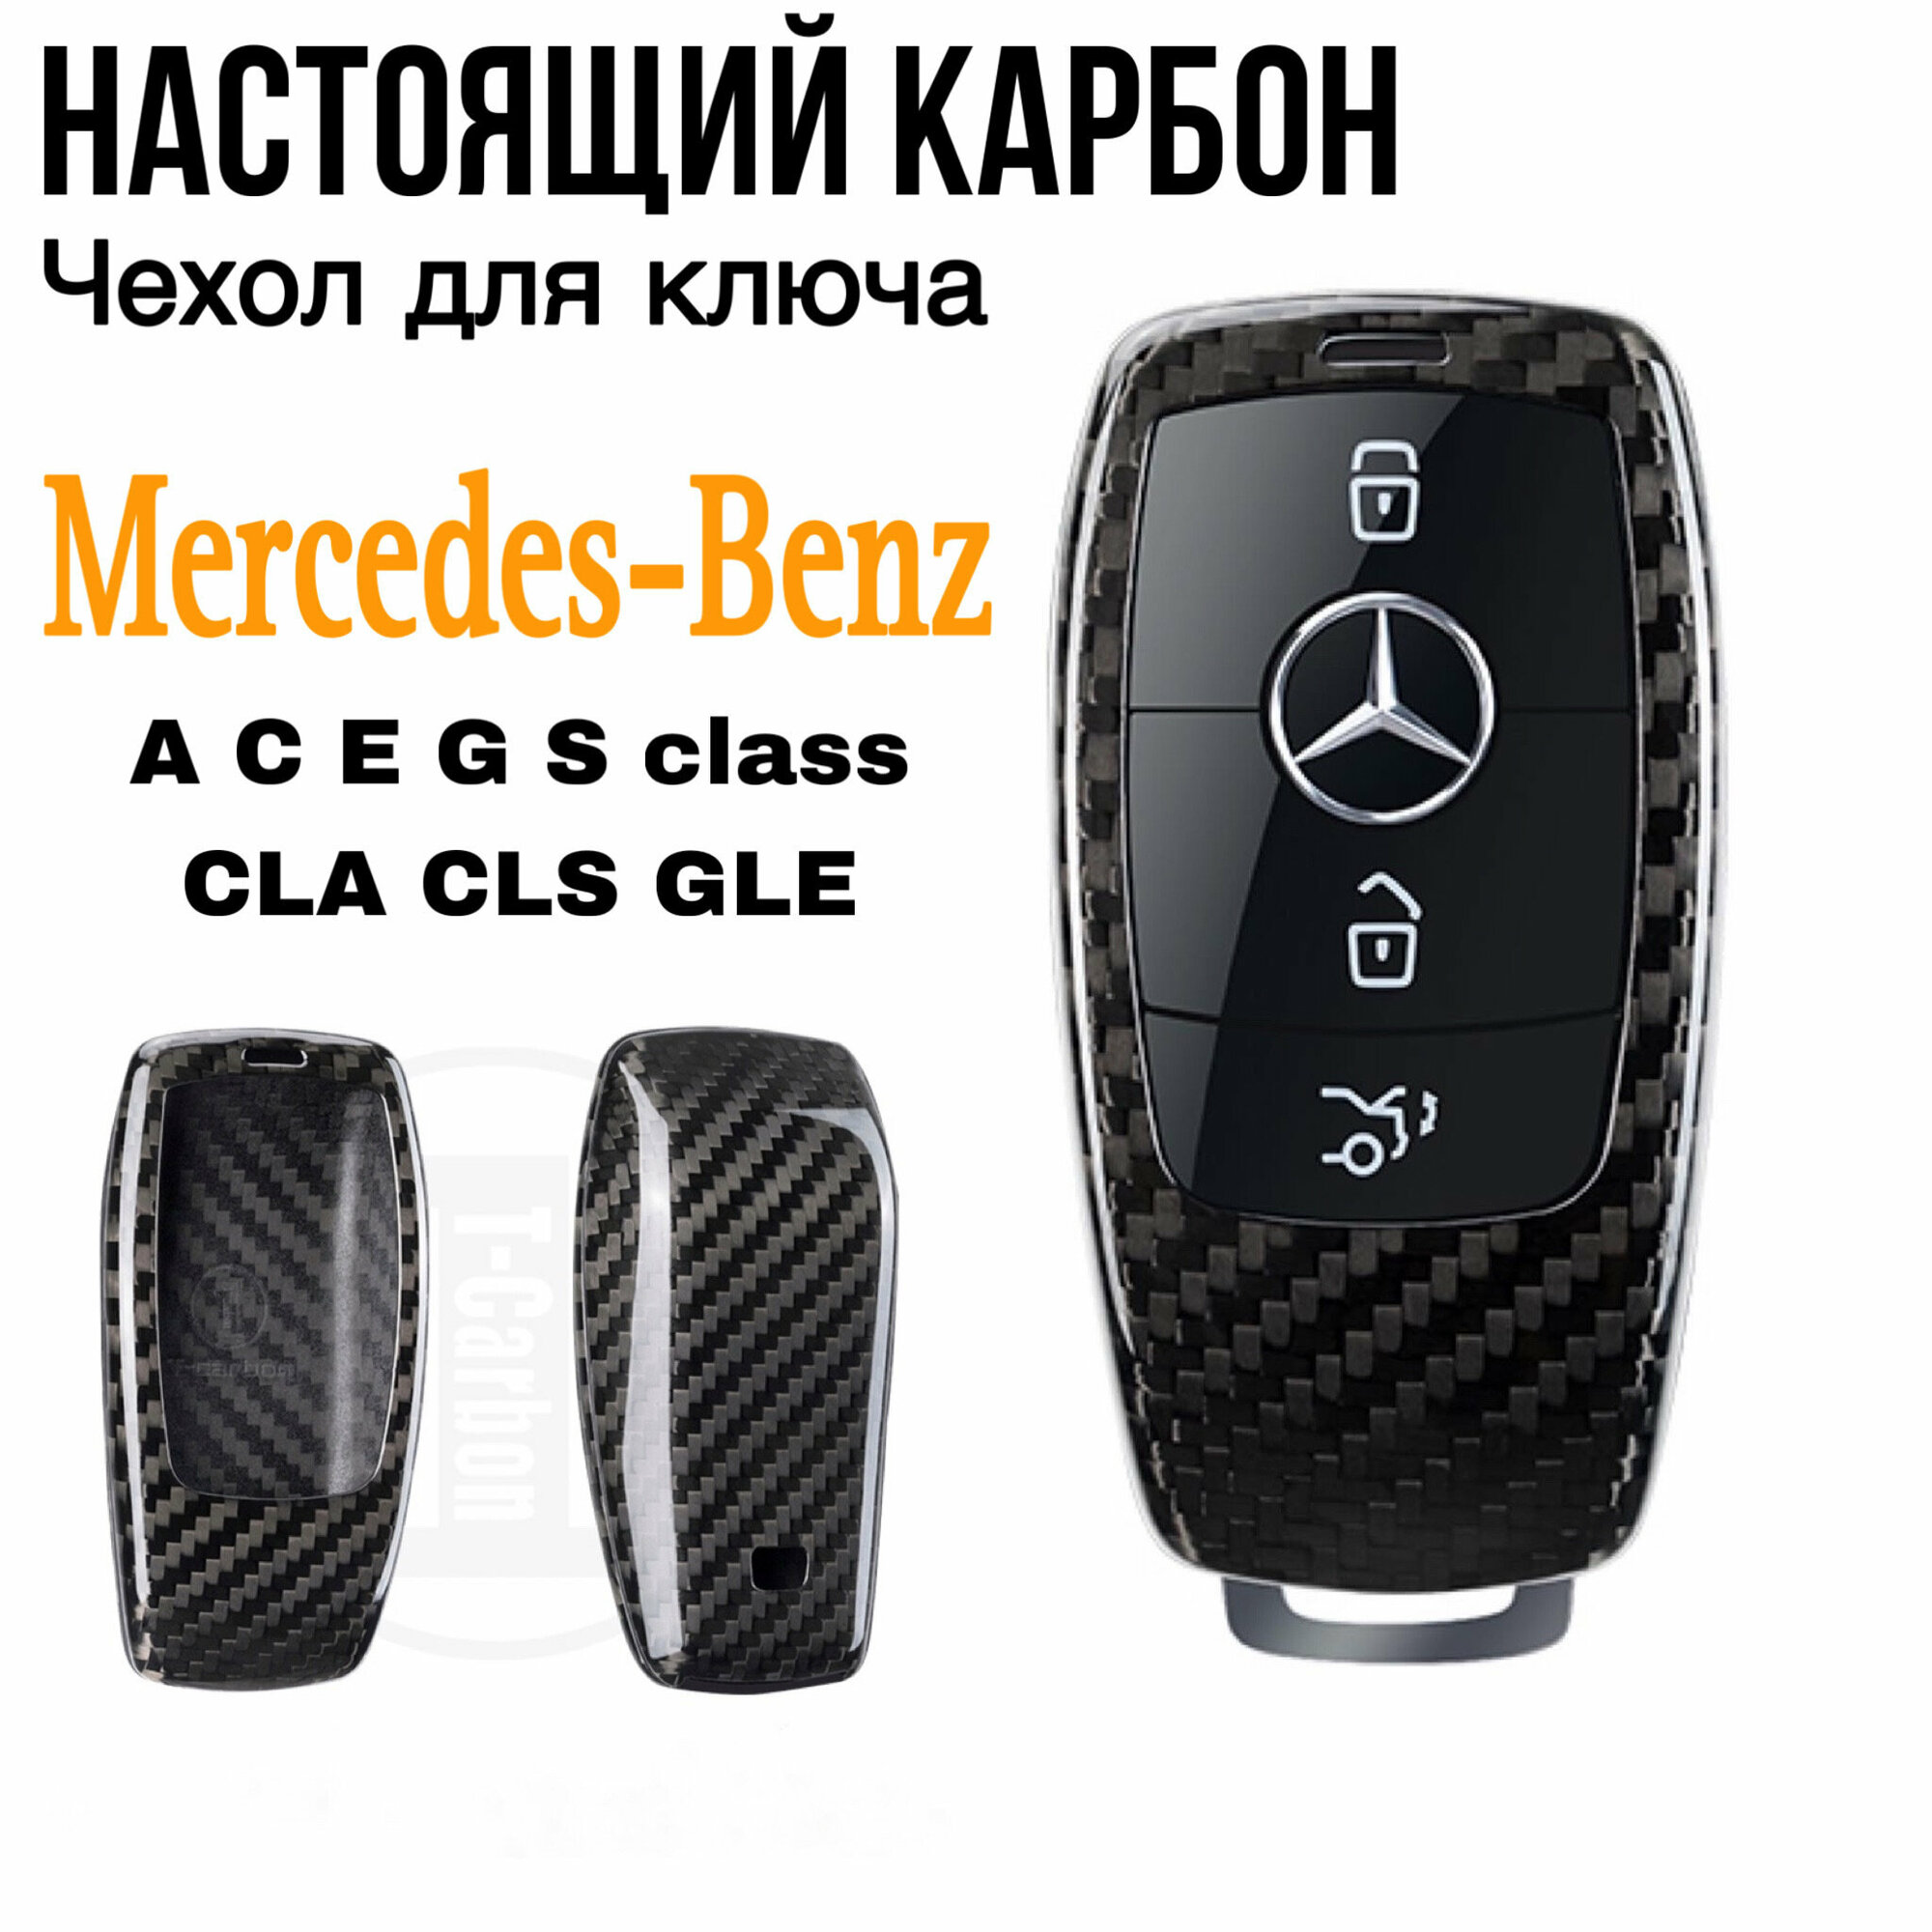 Чехол для ключа Mercedes-Benz W205 W213 W222 настоящий карбон/ Чехол на ключ Мерседес A C E S class